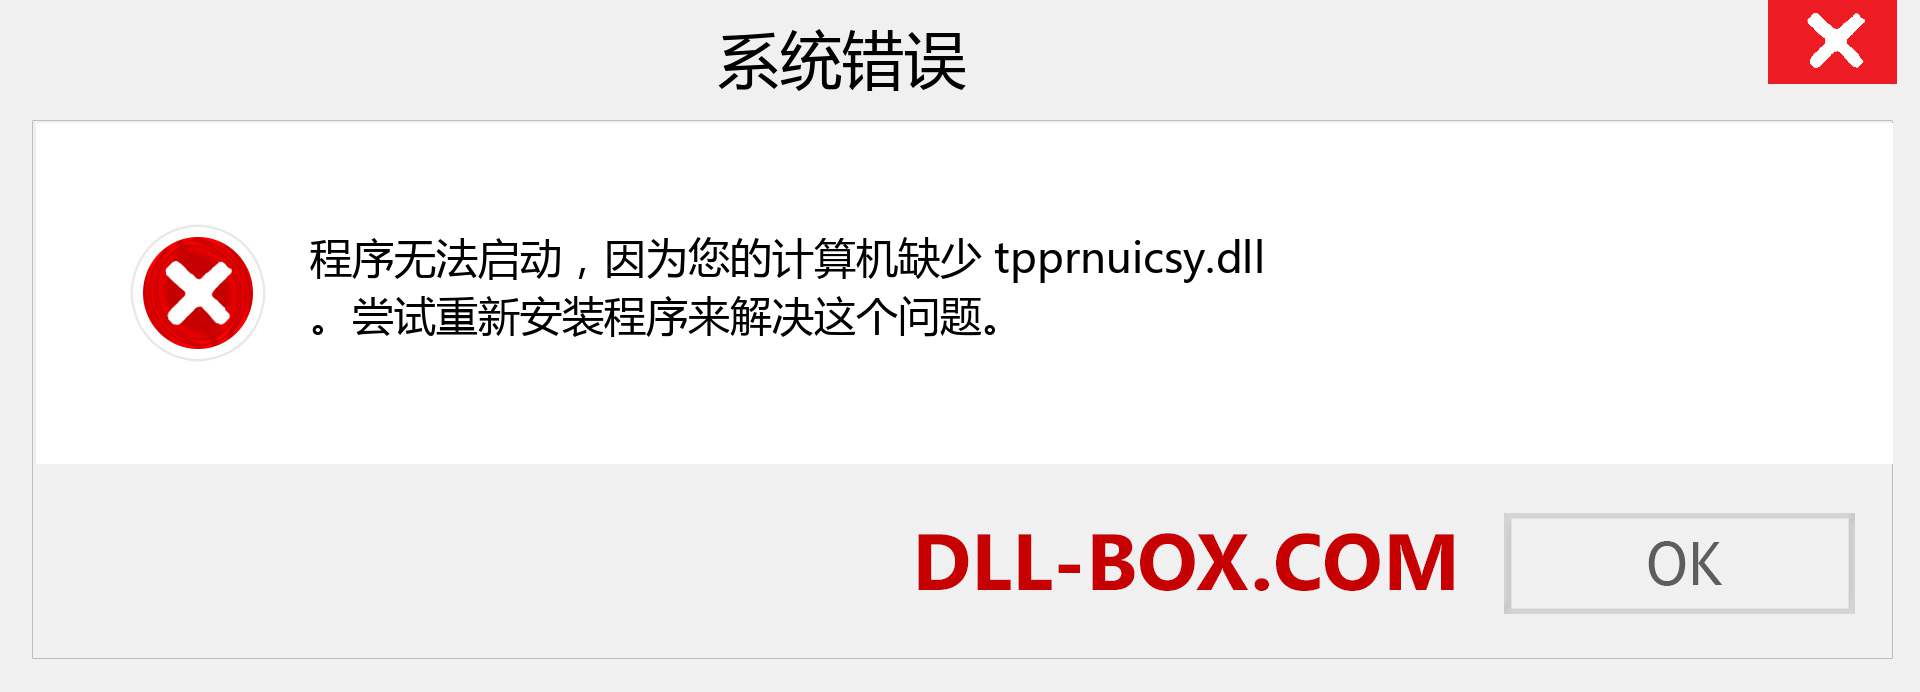 tpprnuicsy.dll 文件丢失？。 适用于 Windows 7、8、10 的下载 - 修复 Windows、照片、图像上的 tpprnuicsy dll 丢失错误